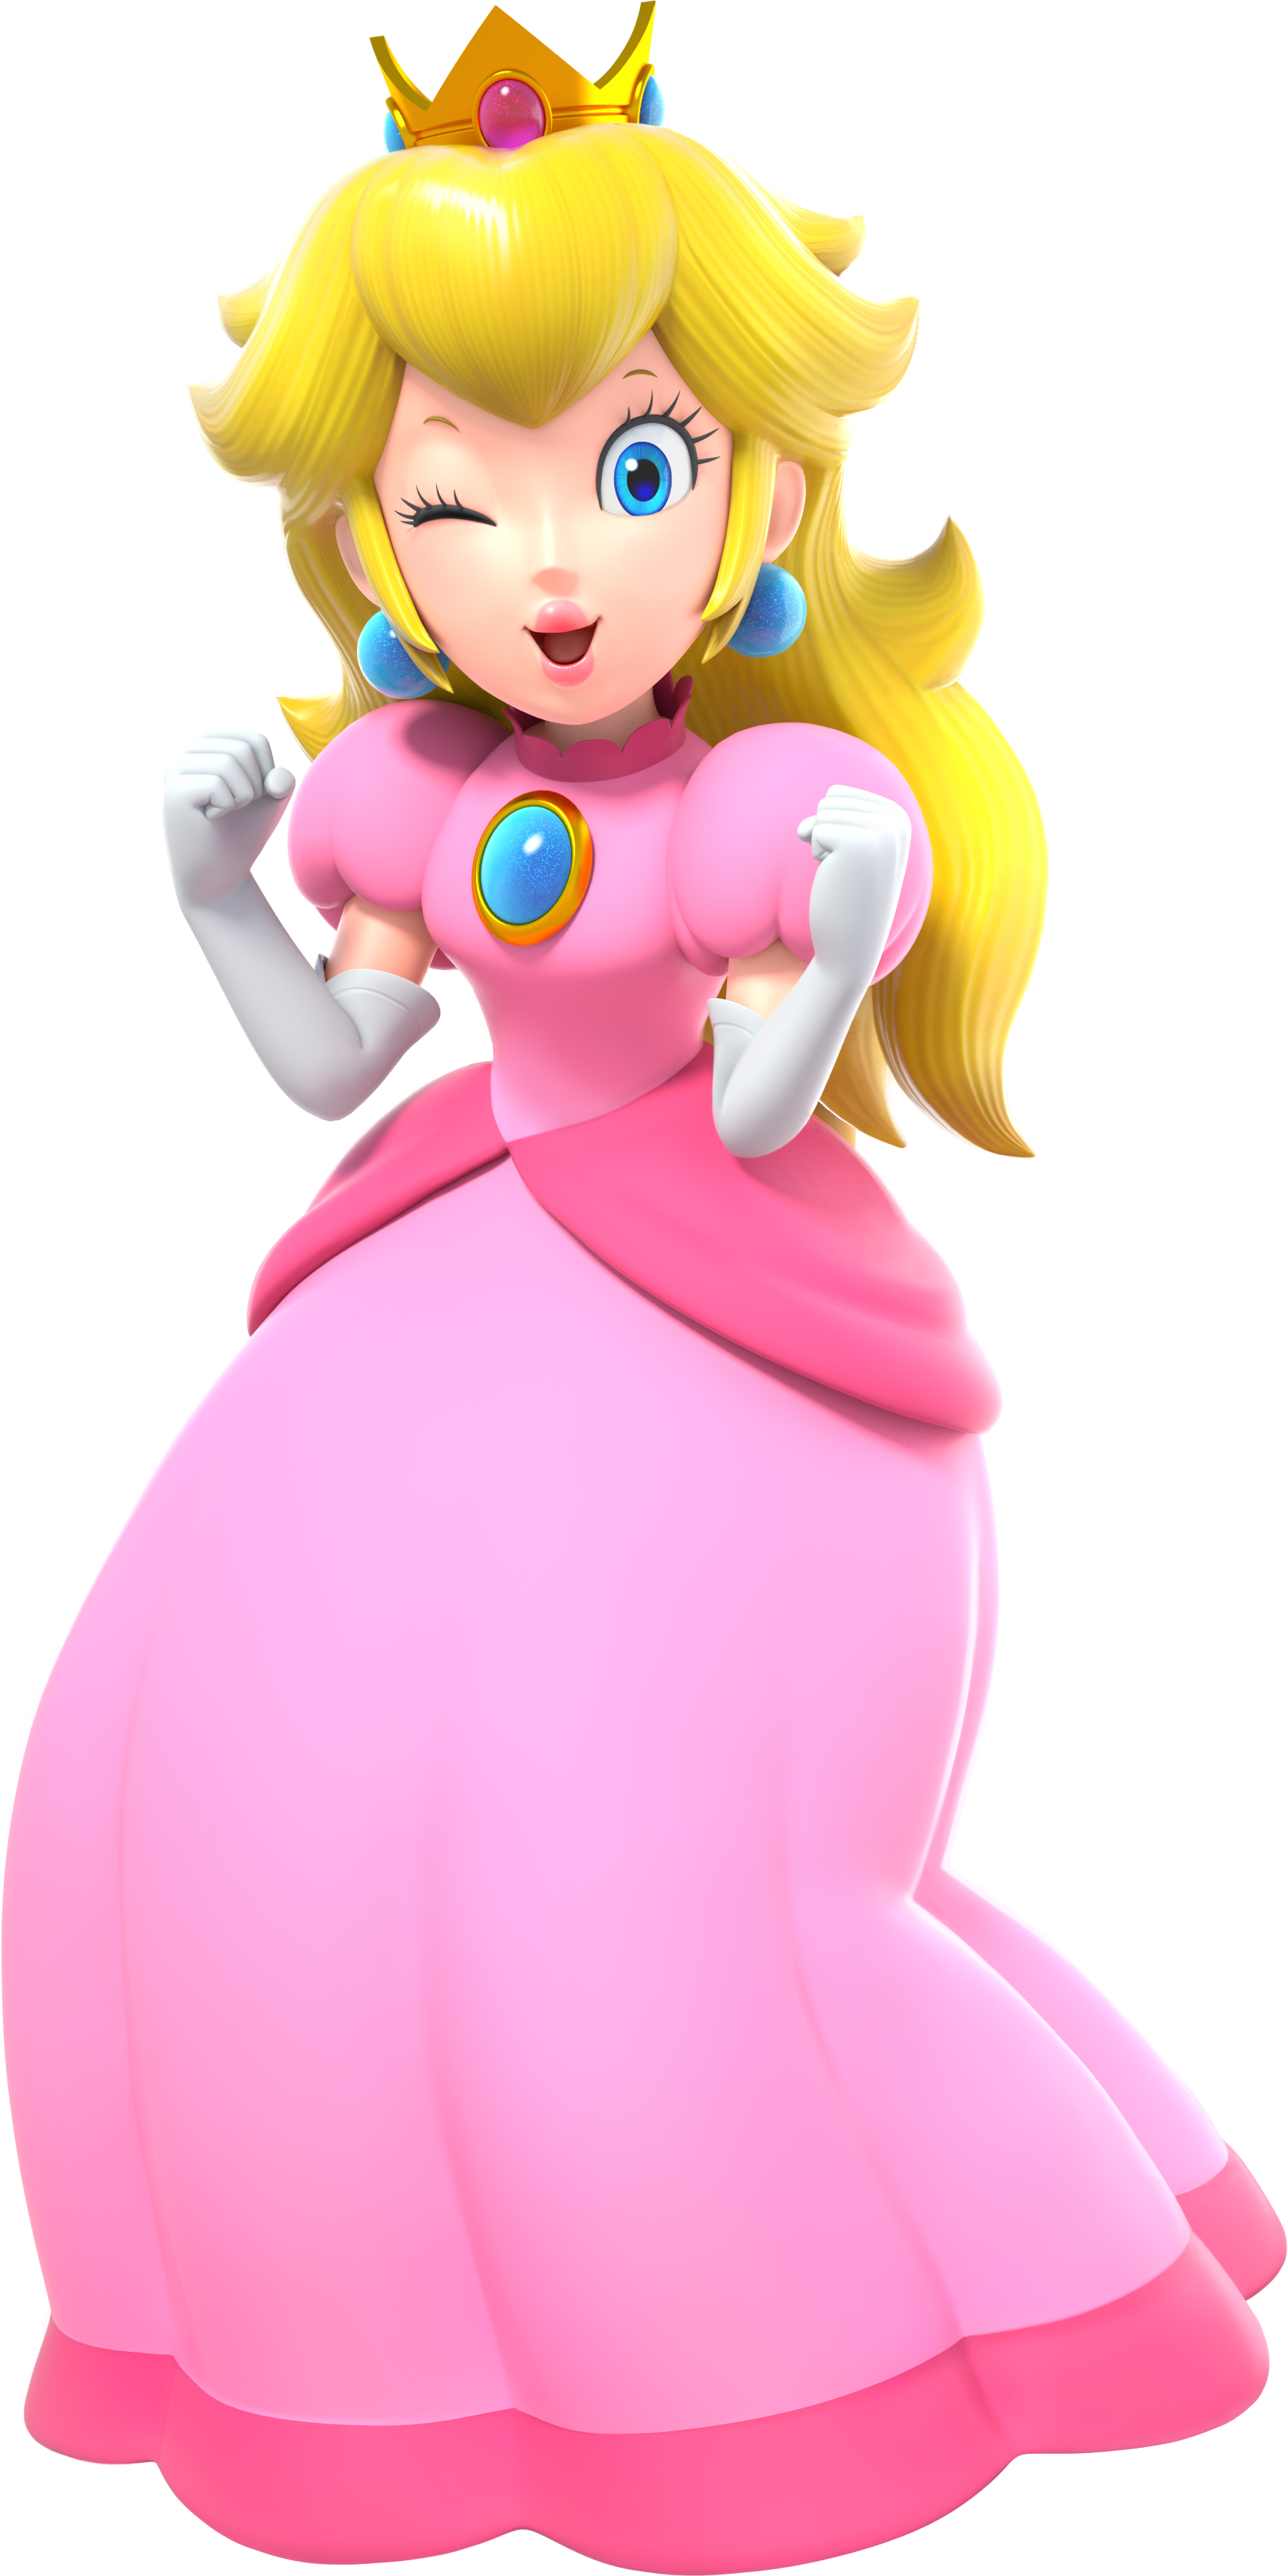 File:SuperMarioParty Peach.png - Super Mario Wiki, the Mario encyclopedia